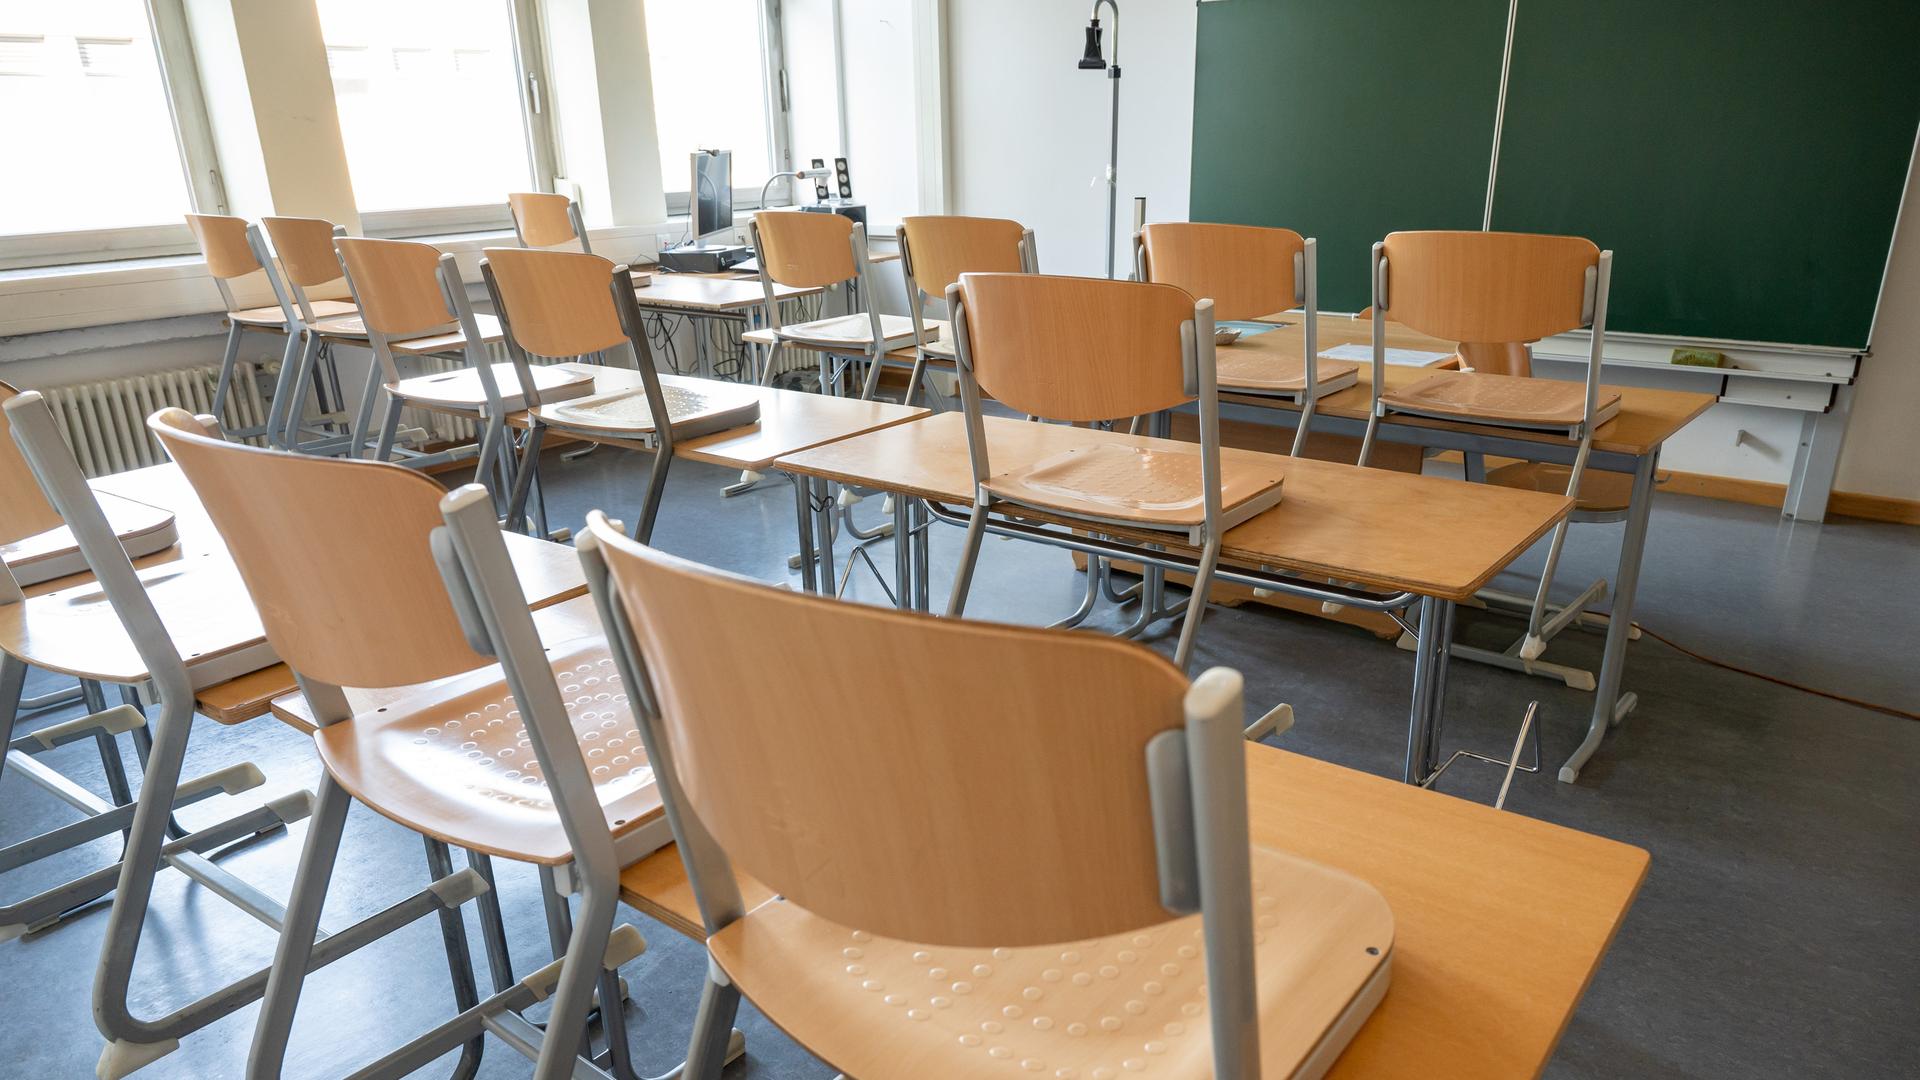 Ein leeres Klassenzimmer mit hochgestellten Stühlen und einer grünen Tafel im Hintergrund.